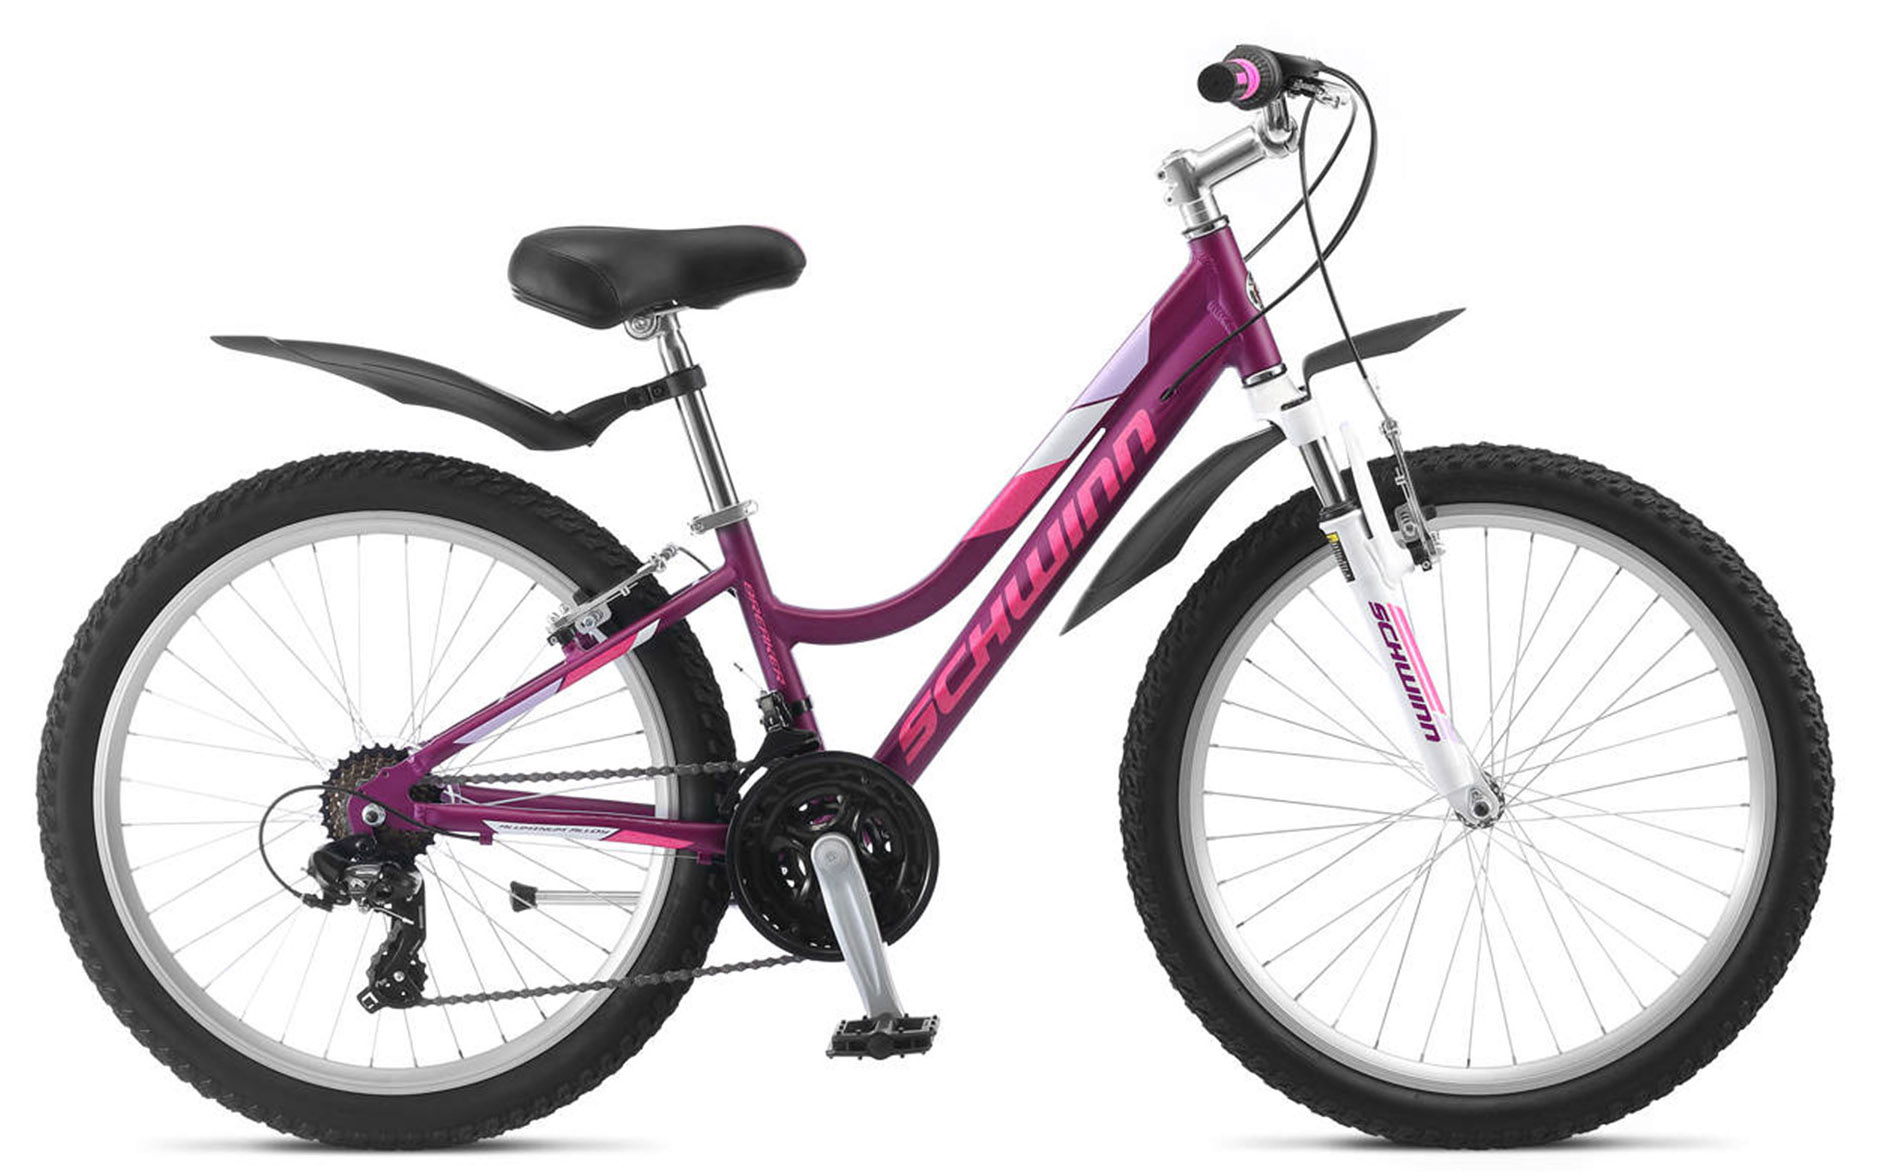  Отзывы о Подростковом велосипеде Schwinn Breaker 24 Girls 2020